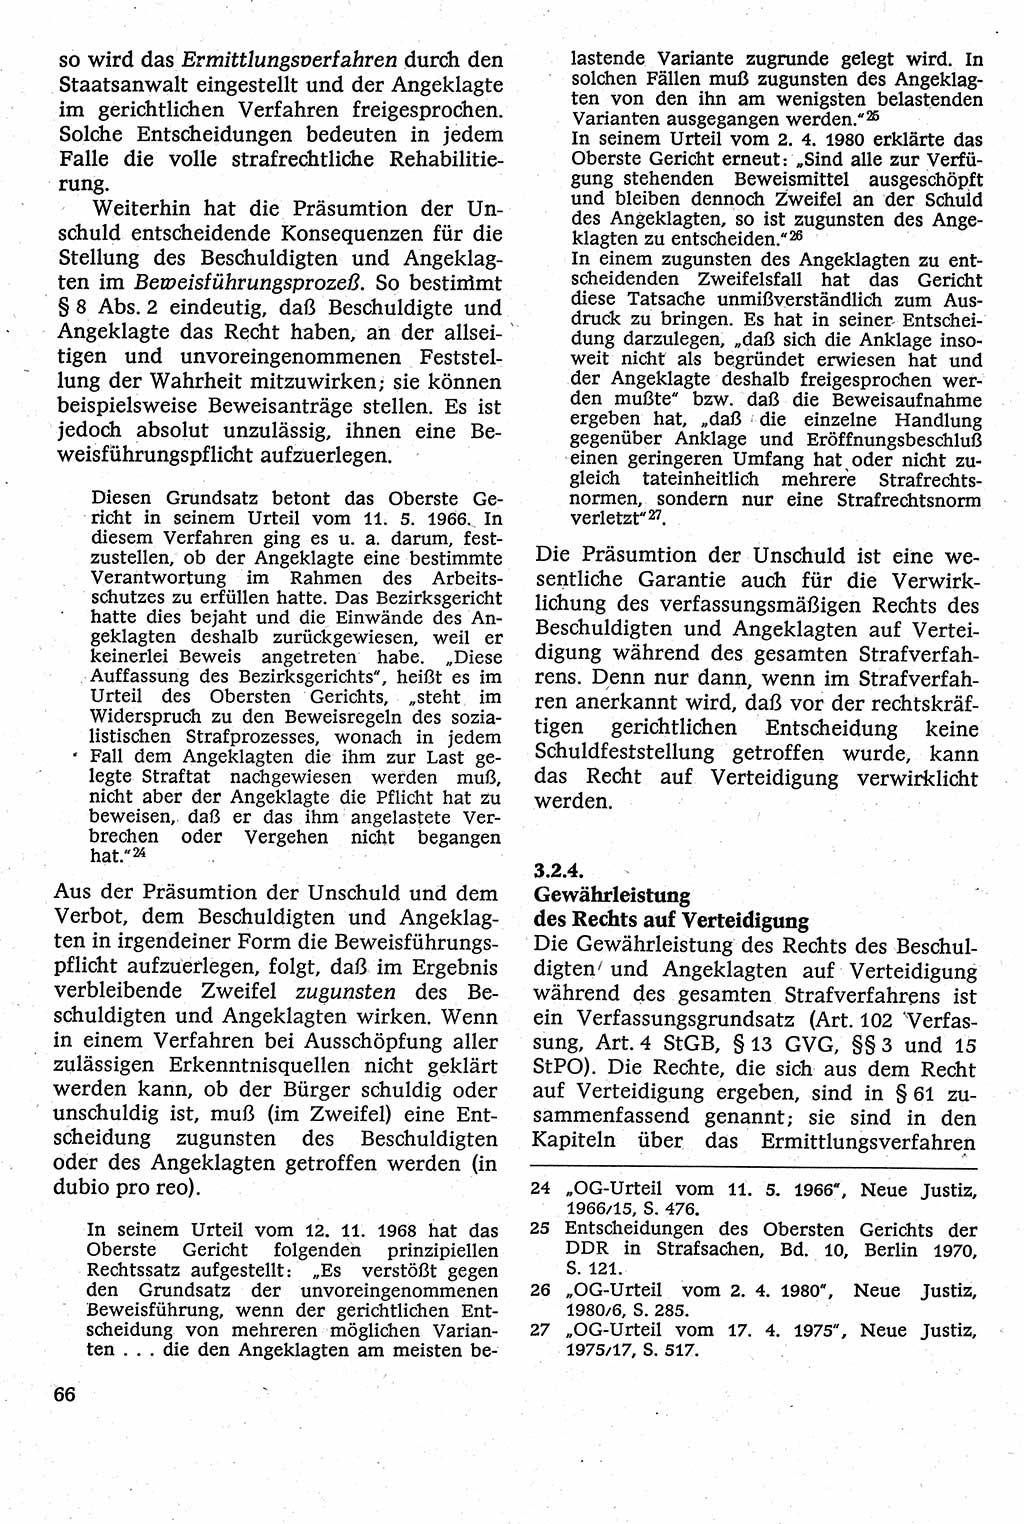 Strafverfahrensrecht [Deutsche Demokratische Republik (DDR)], Lehrbuch 1982, Seite 66 (Strafverf.-R. DDR Lb. 1982, S. 66)